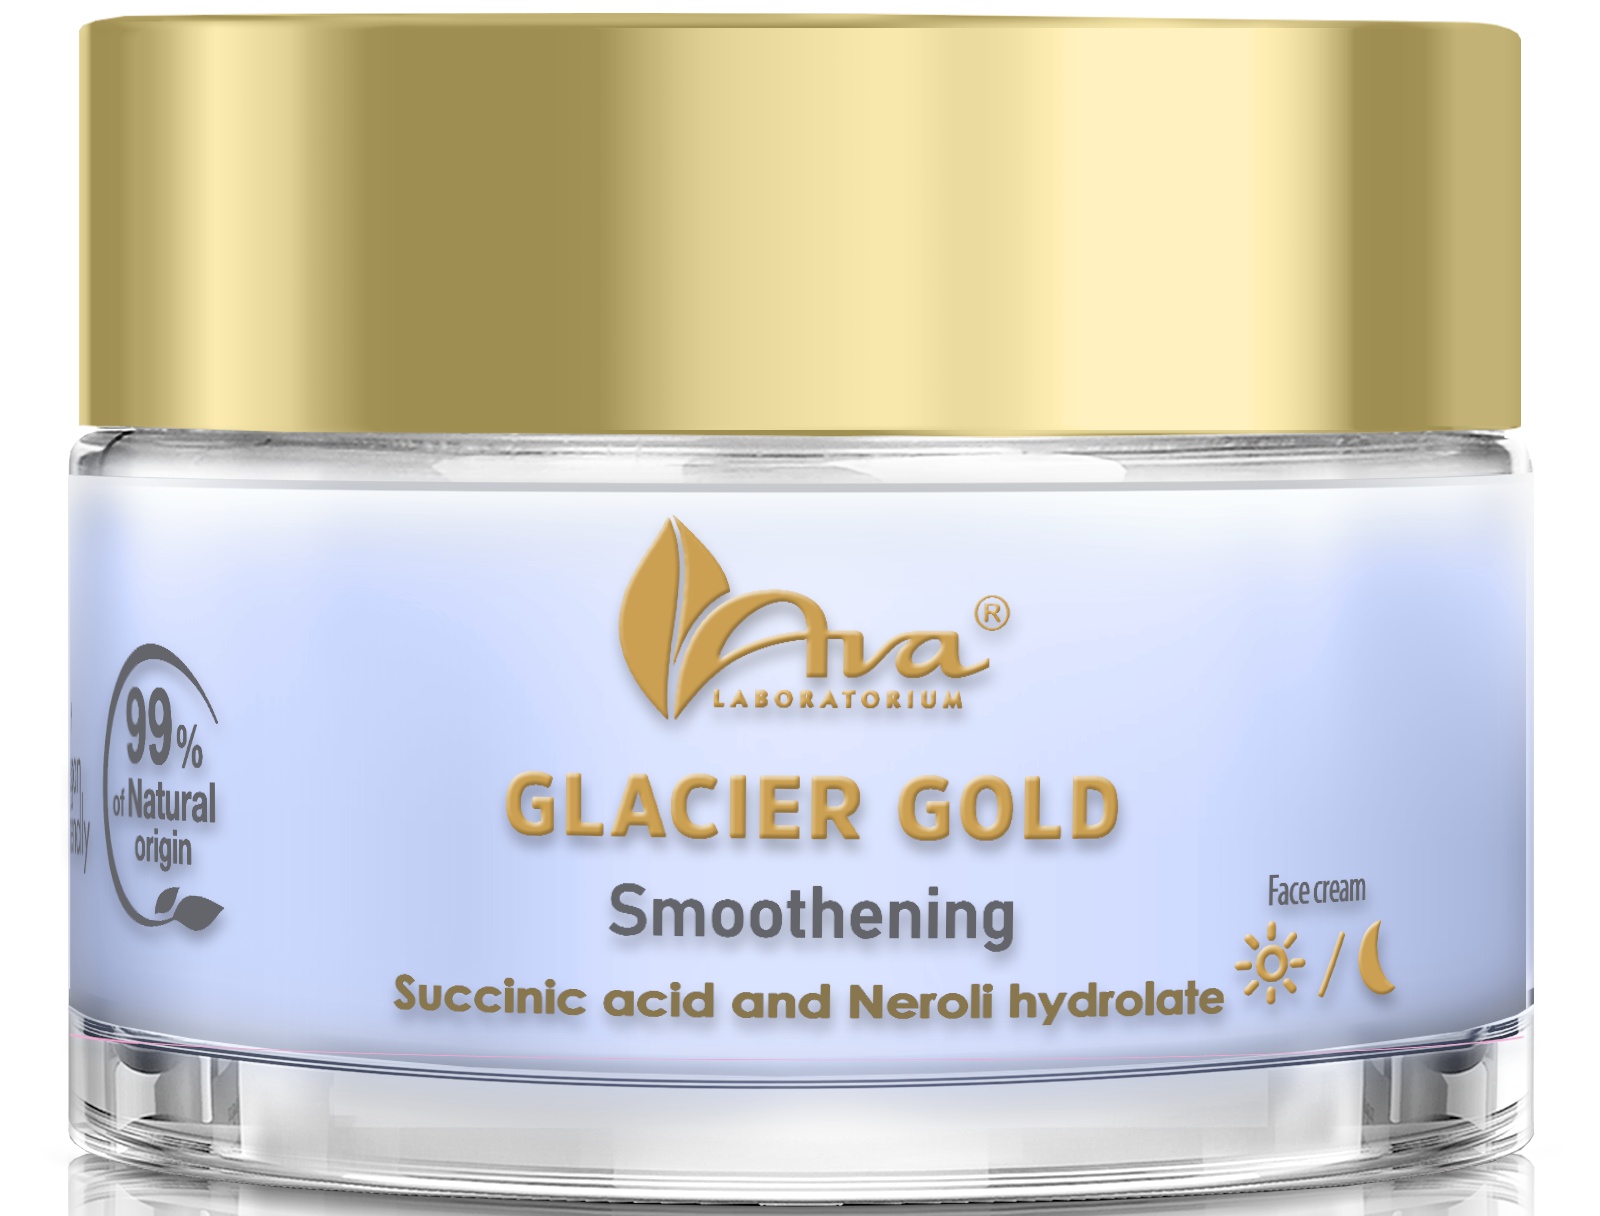 Ava Laboratorium Glacier Gold Smoothening Face Cream